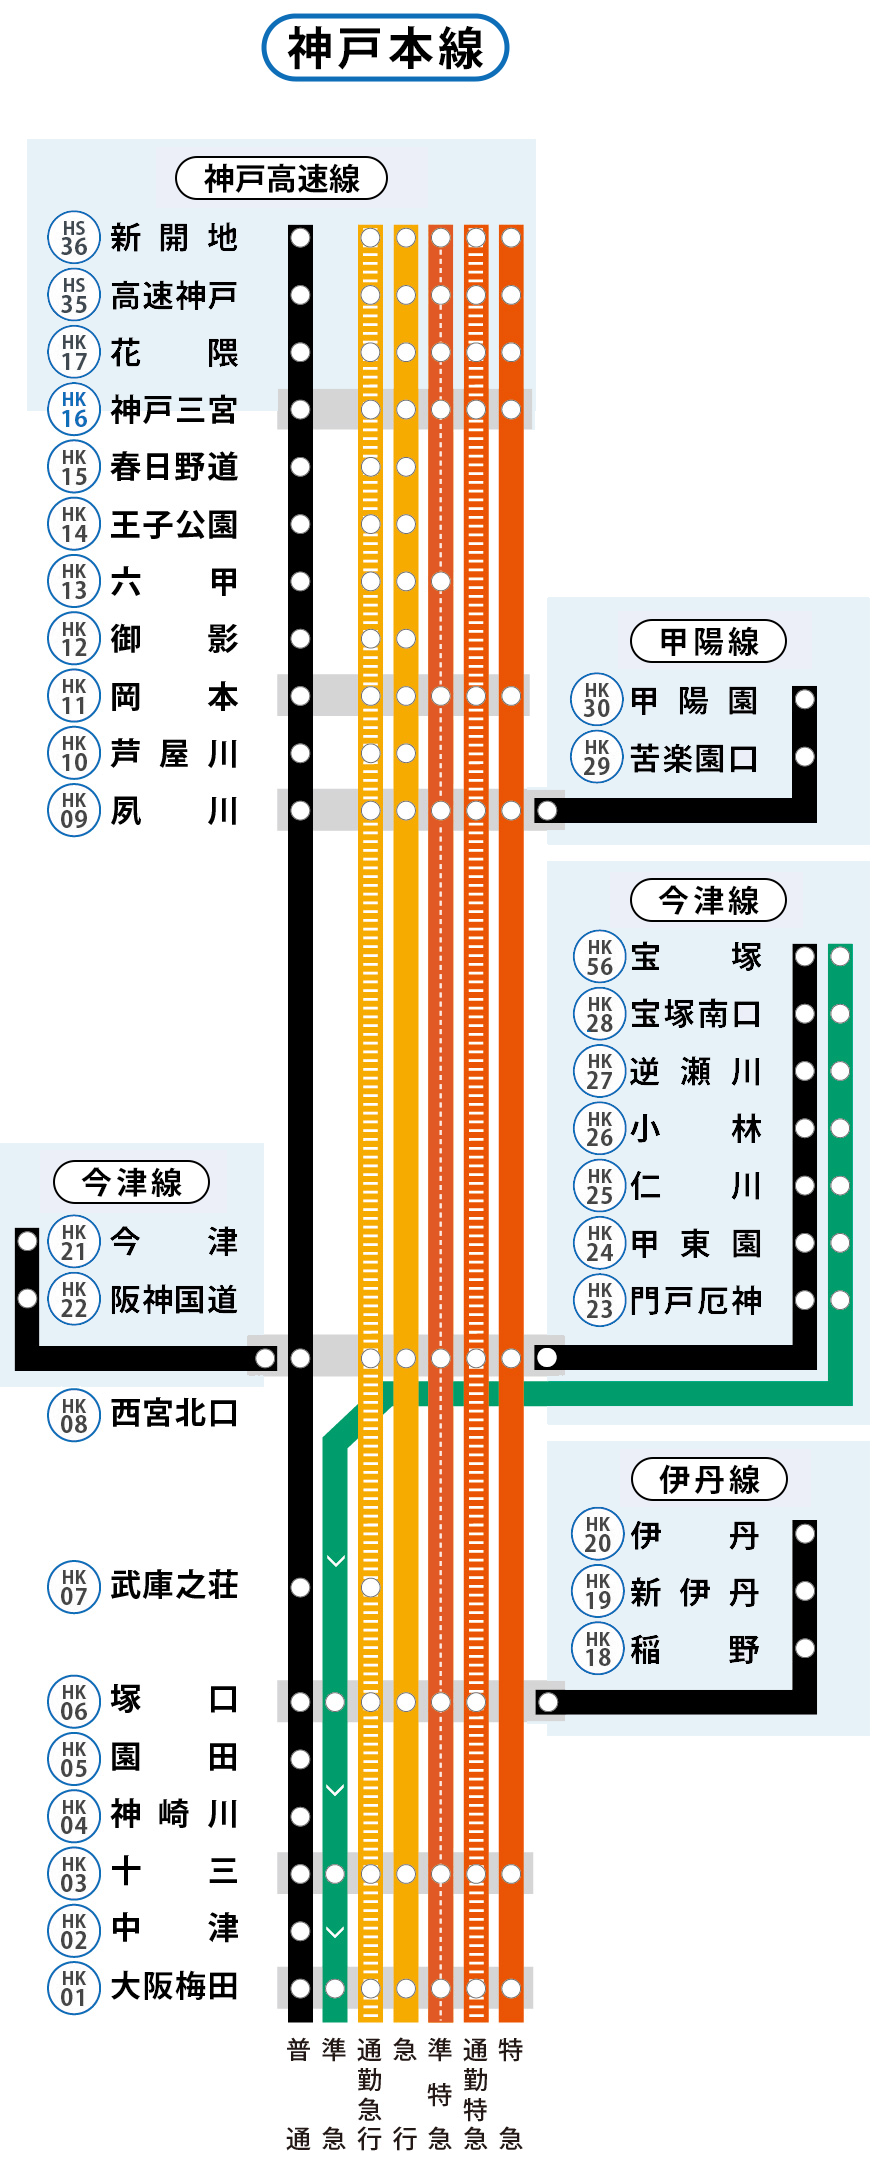 神戸線は神戸本線・伊丹線・今津線・甲陽線から構成されています。
神戸線各駅の列車発車時刻や停車駅は、上部の「サービス施設一覧」から、各駅の時刻表ページをご確認ください。
